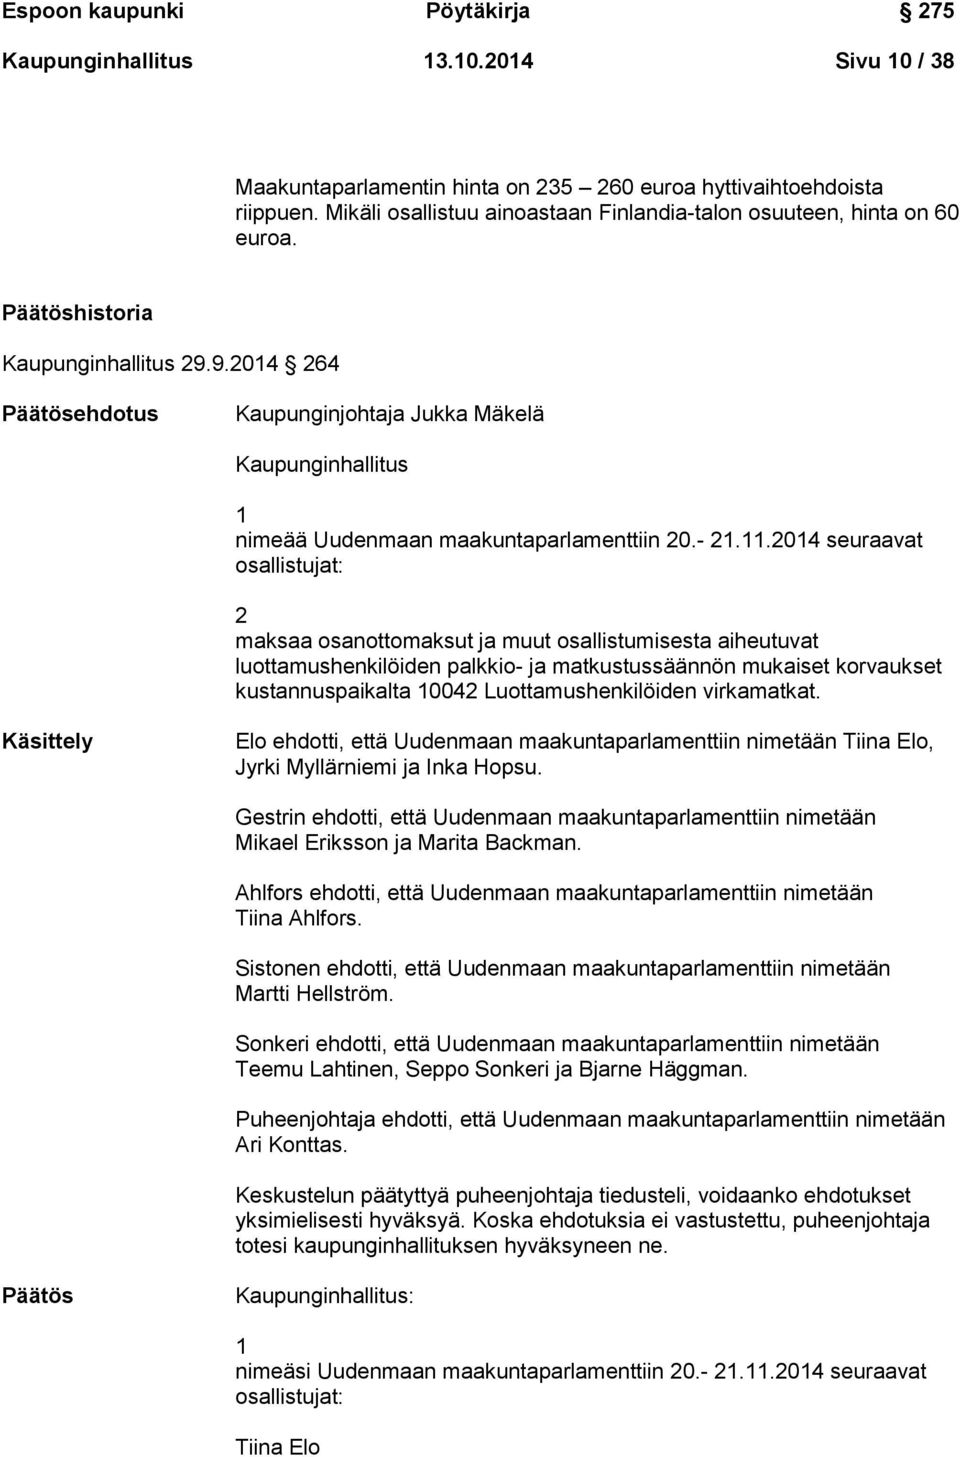 9.2014 264 Päätösehdotus Kaupunginjohtaja Jukka Mäkelä Kaupunginhallitus 1 nimeää Uudenmaan maakuntaparlamenttiin 20.- 21.11.